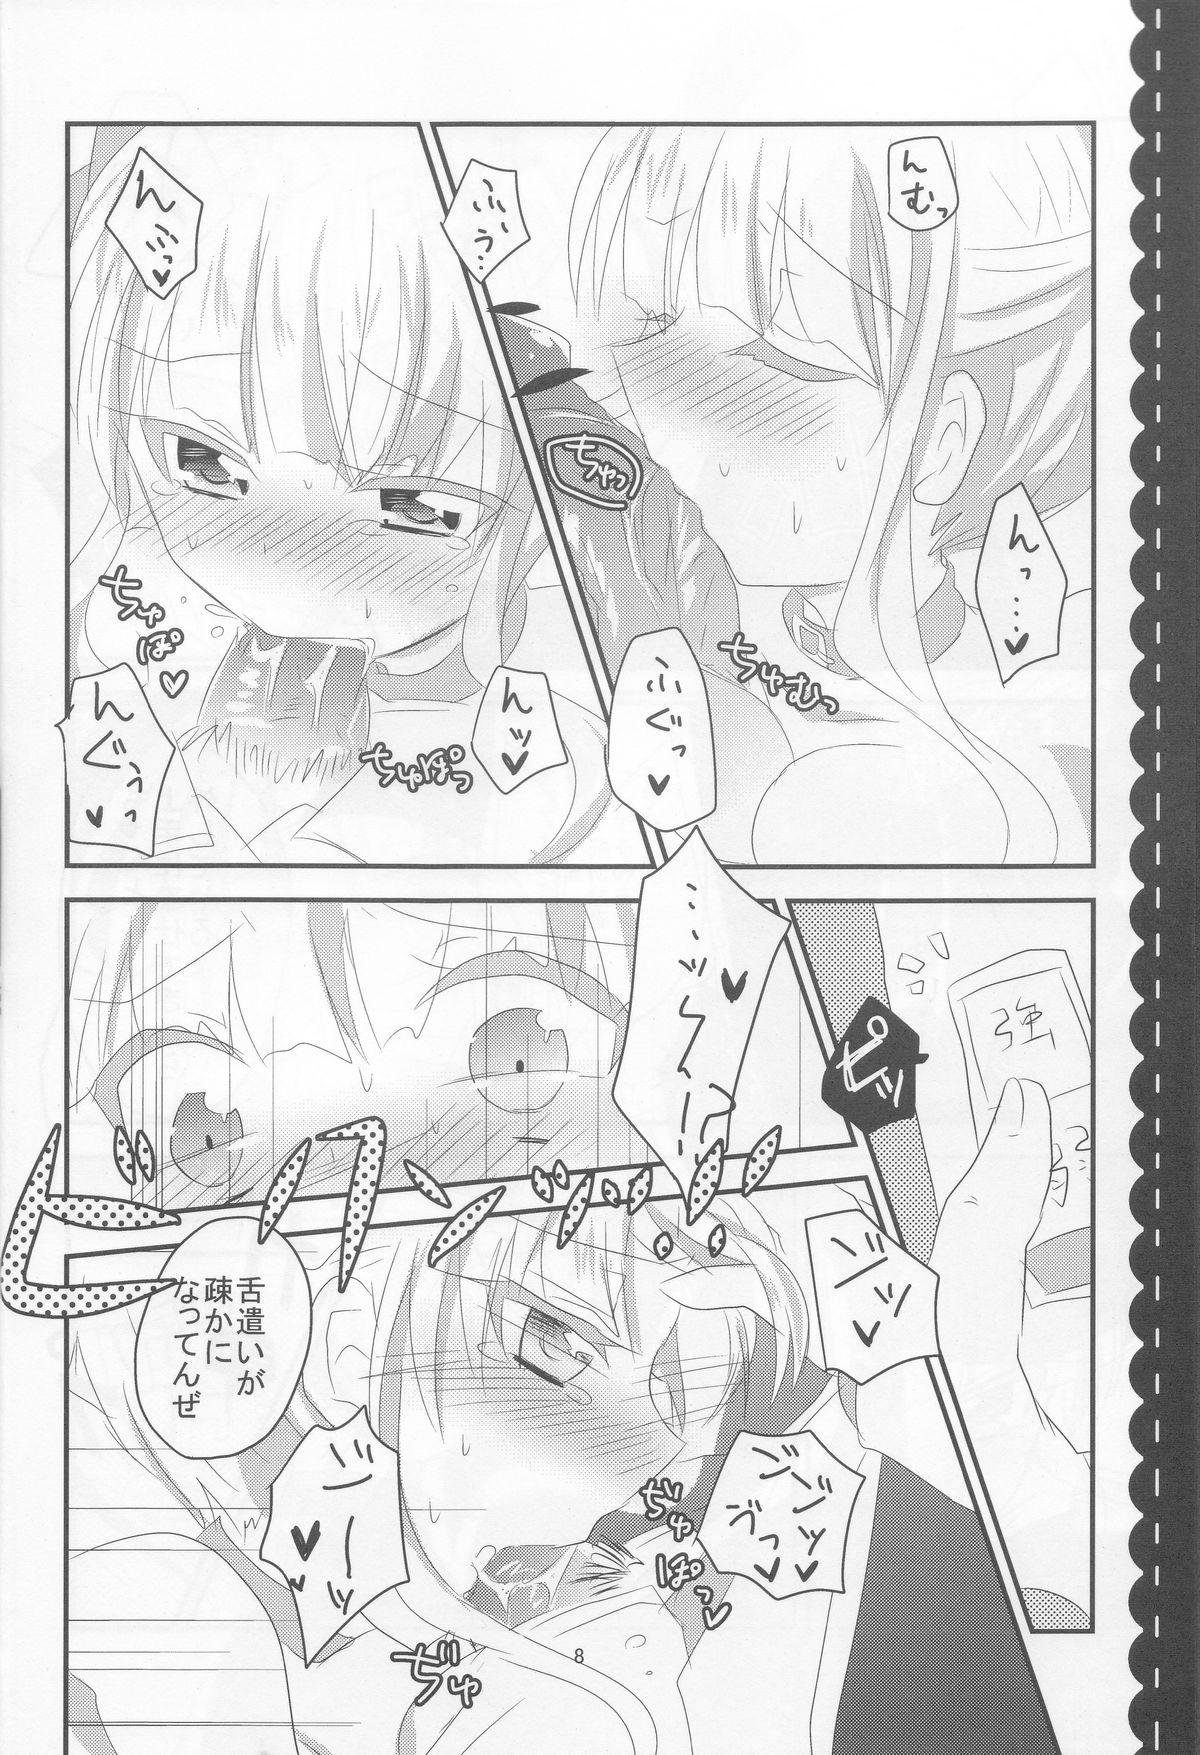 Fantasy Roberta - Umineko no naku koro ni Blows - Page 8